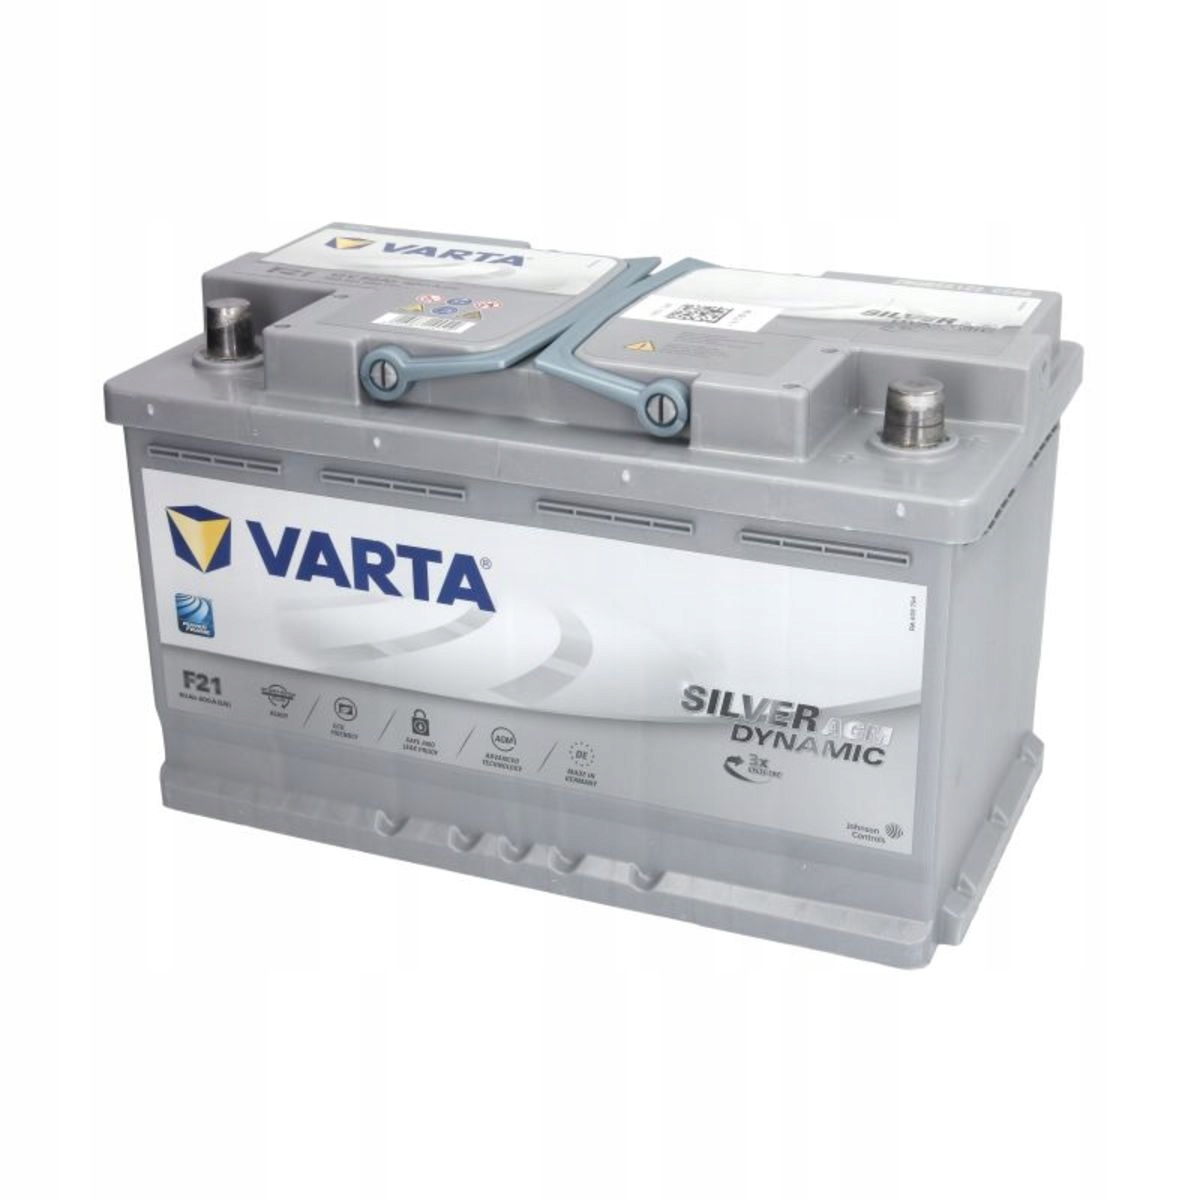 VARTA Batteries 72Ah Ampere-Hours for sale